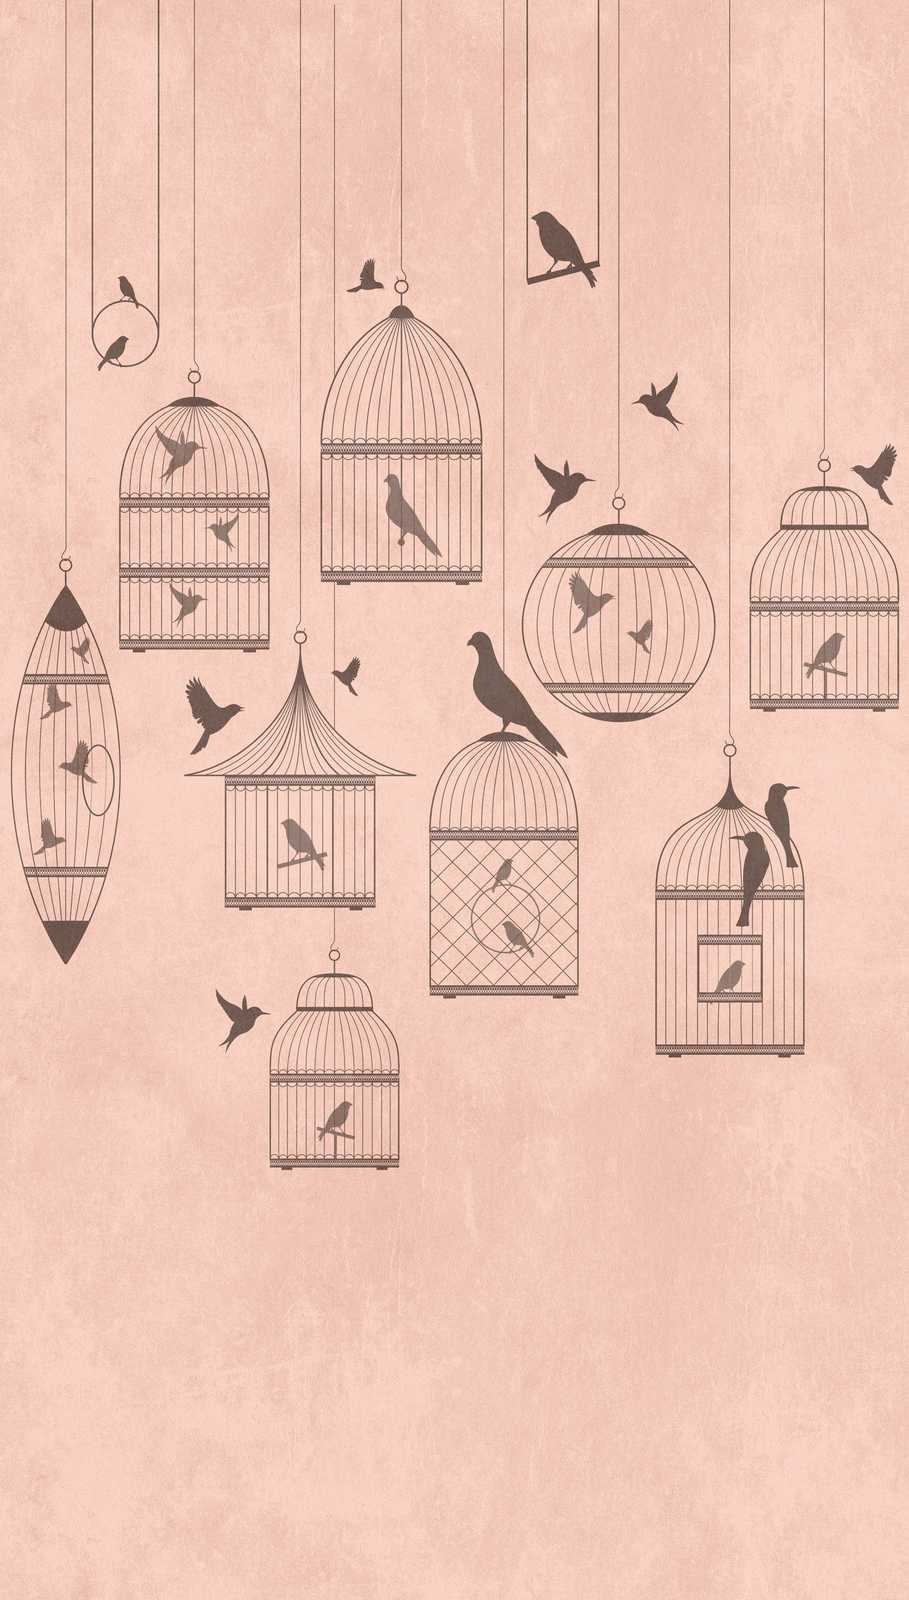             Behang nieuwigheid - roze motief behang zangvogel & vintage volière
        